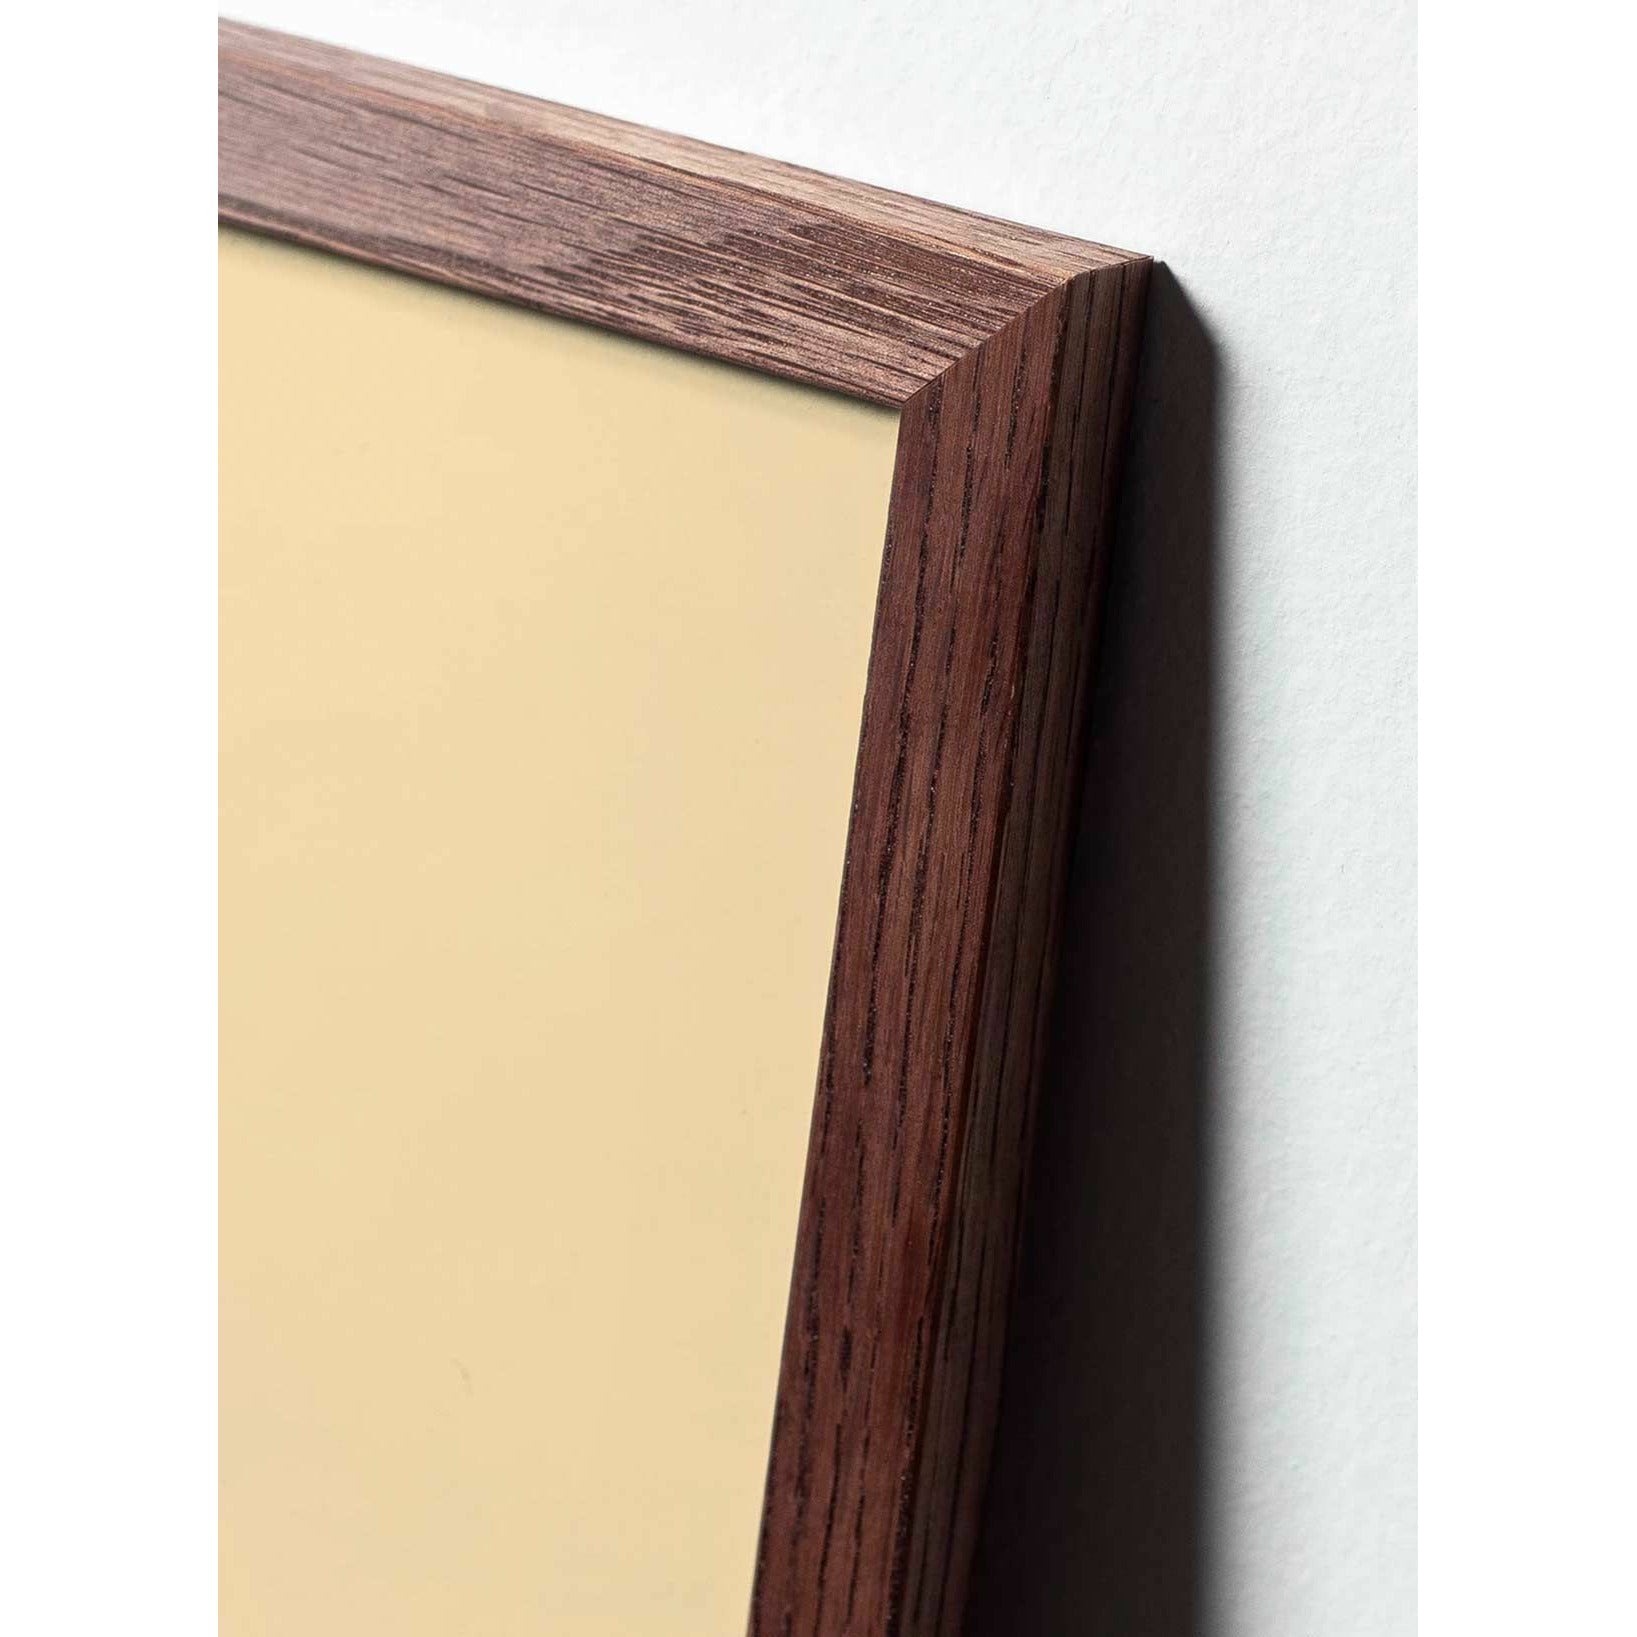 brainchild Affiche Pelikan Classic, cadre en bois foncé 70x100 cm, fond bleu foncé